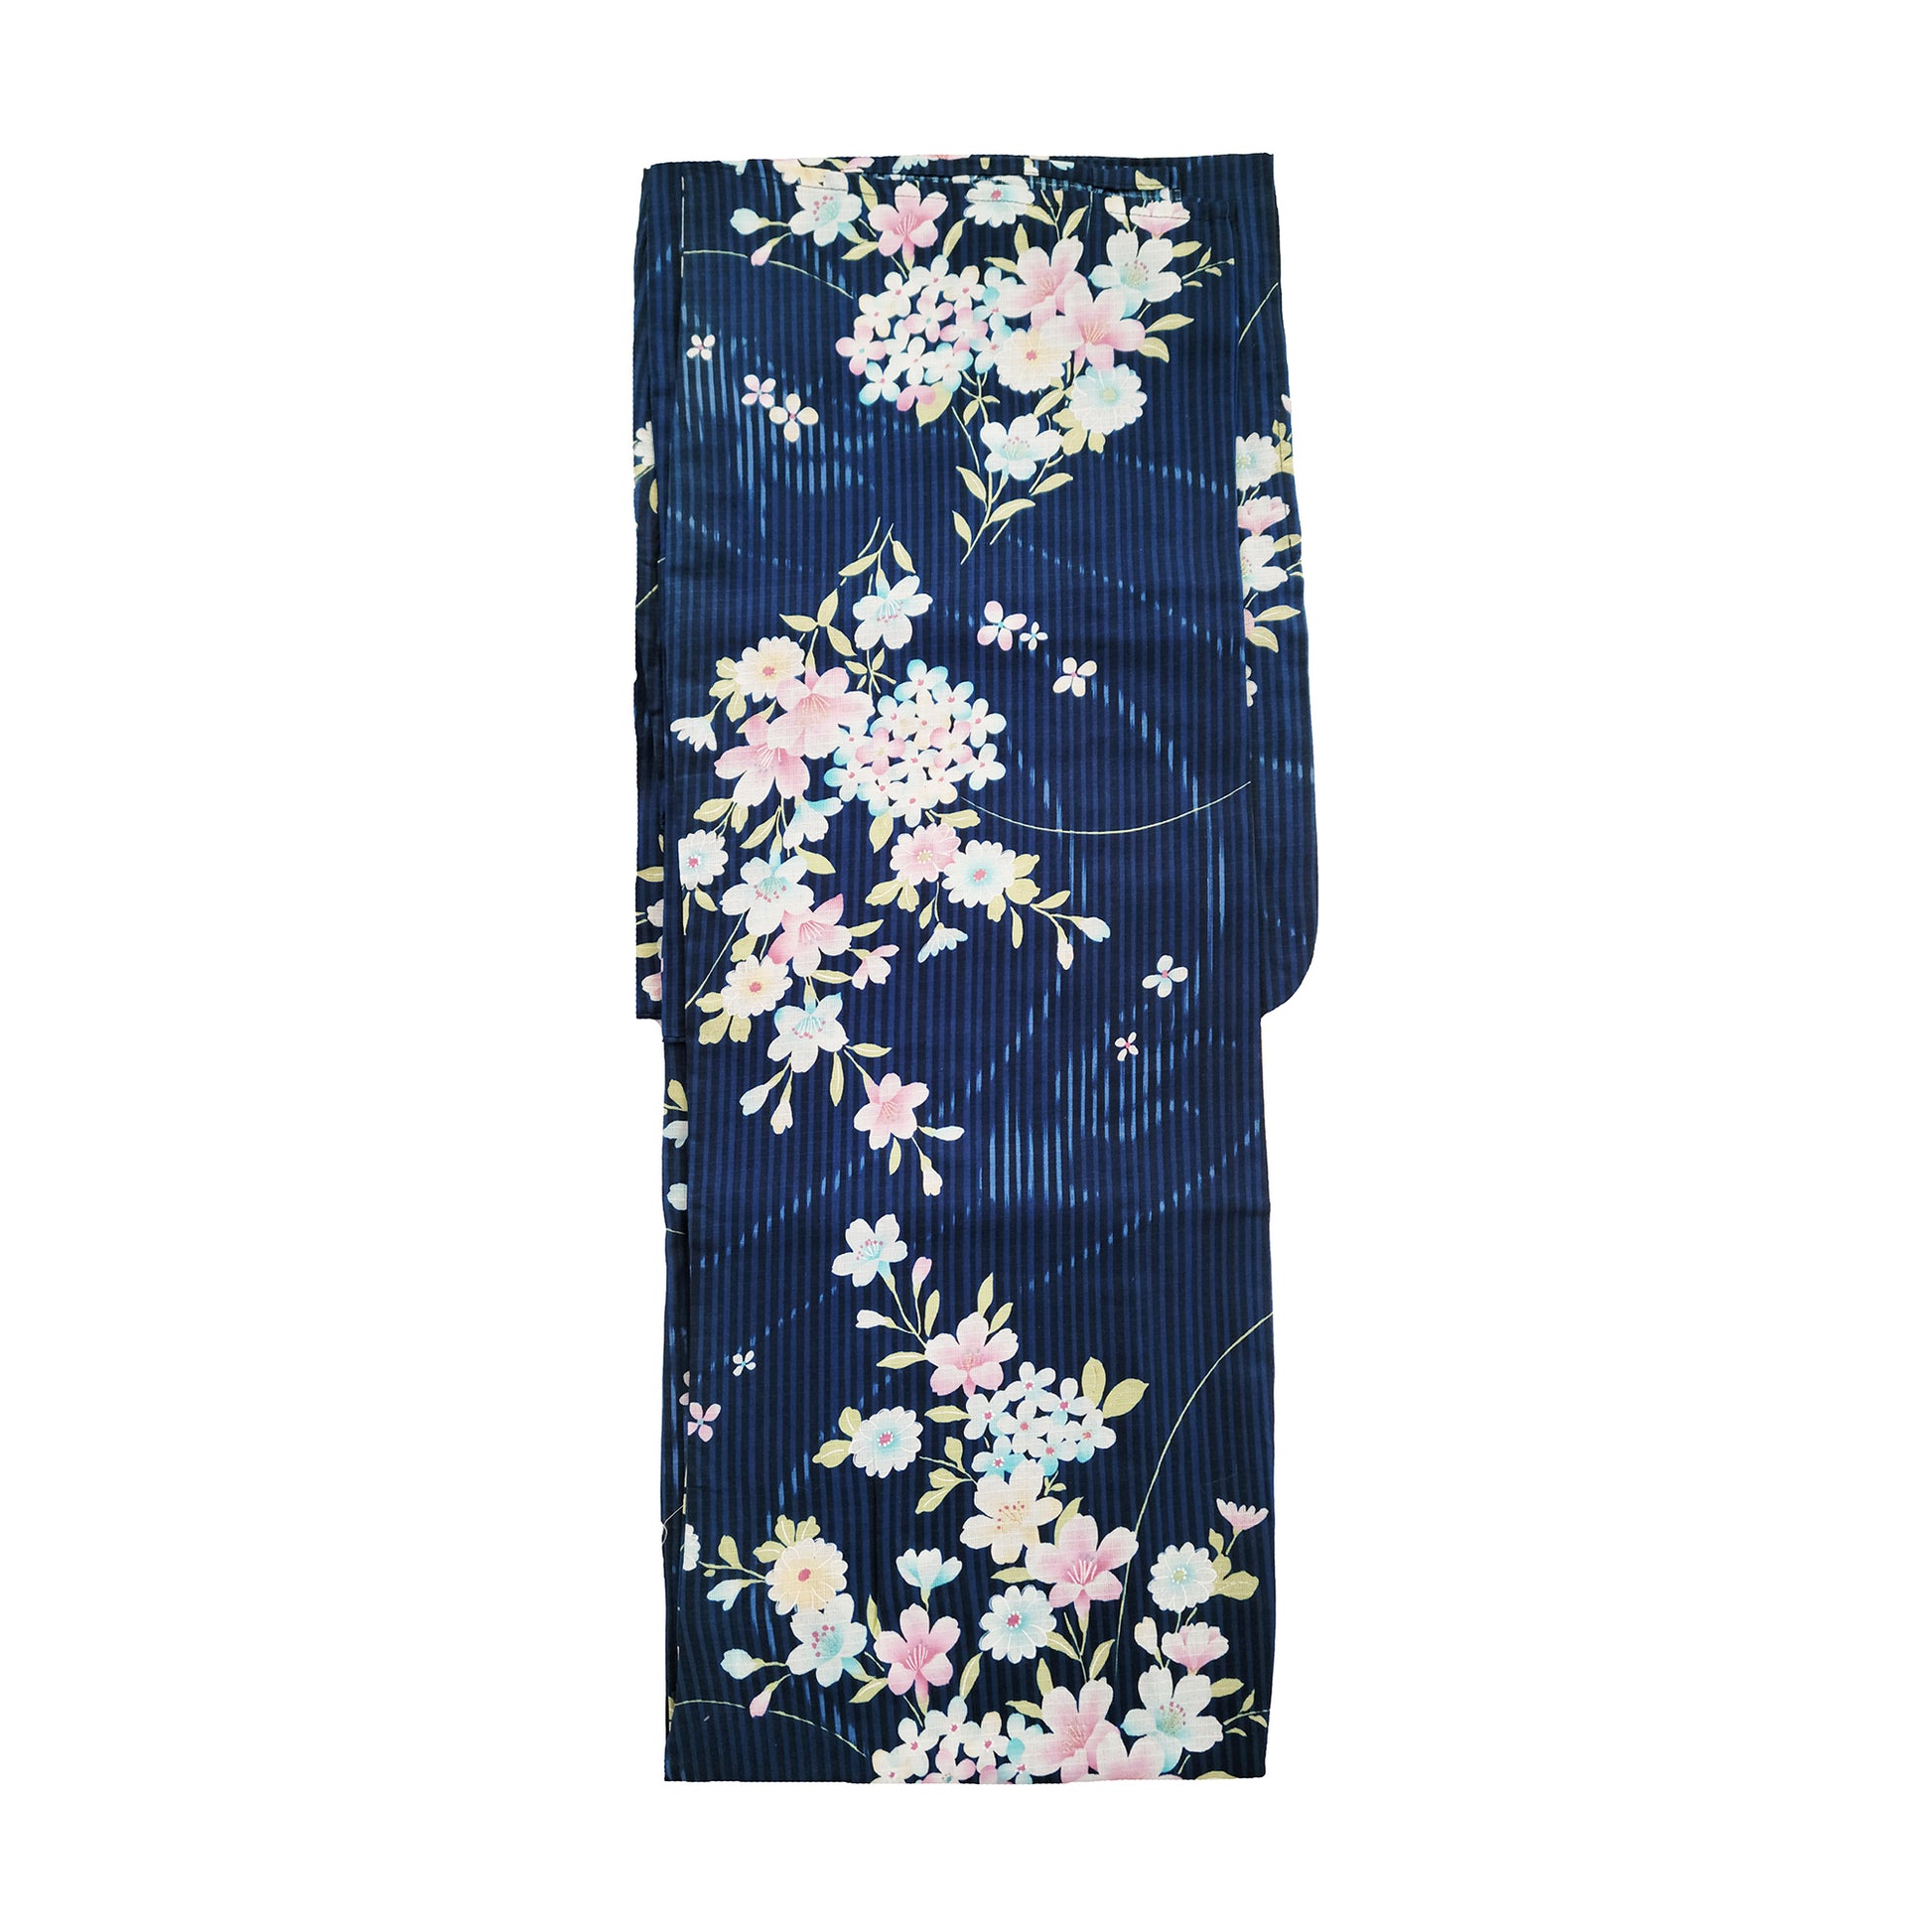 Women's Japanese Yukata Kimono - Goldfish and Flowers in Blue